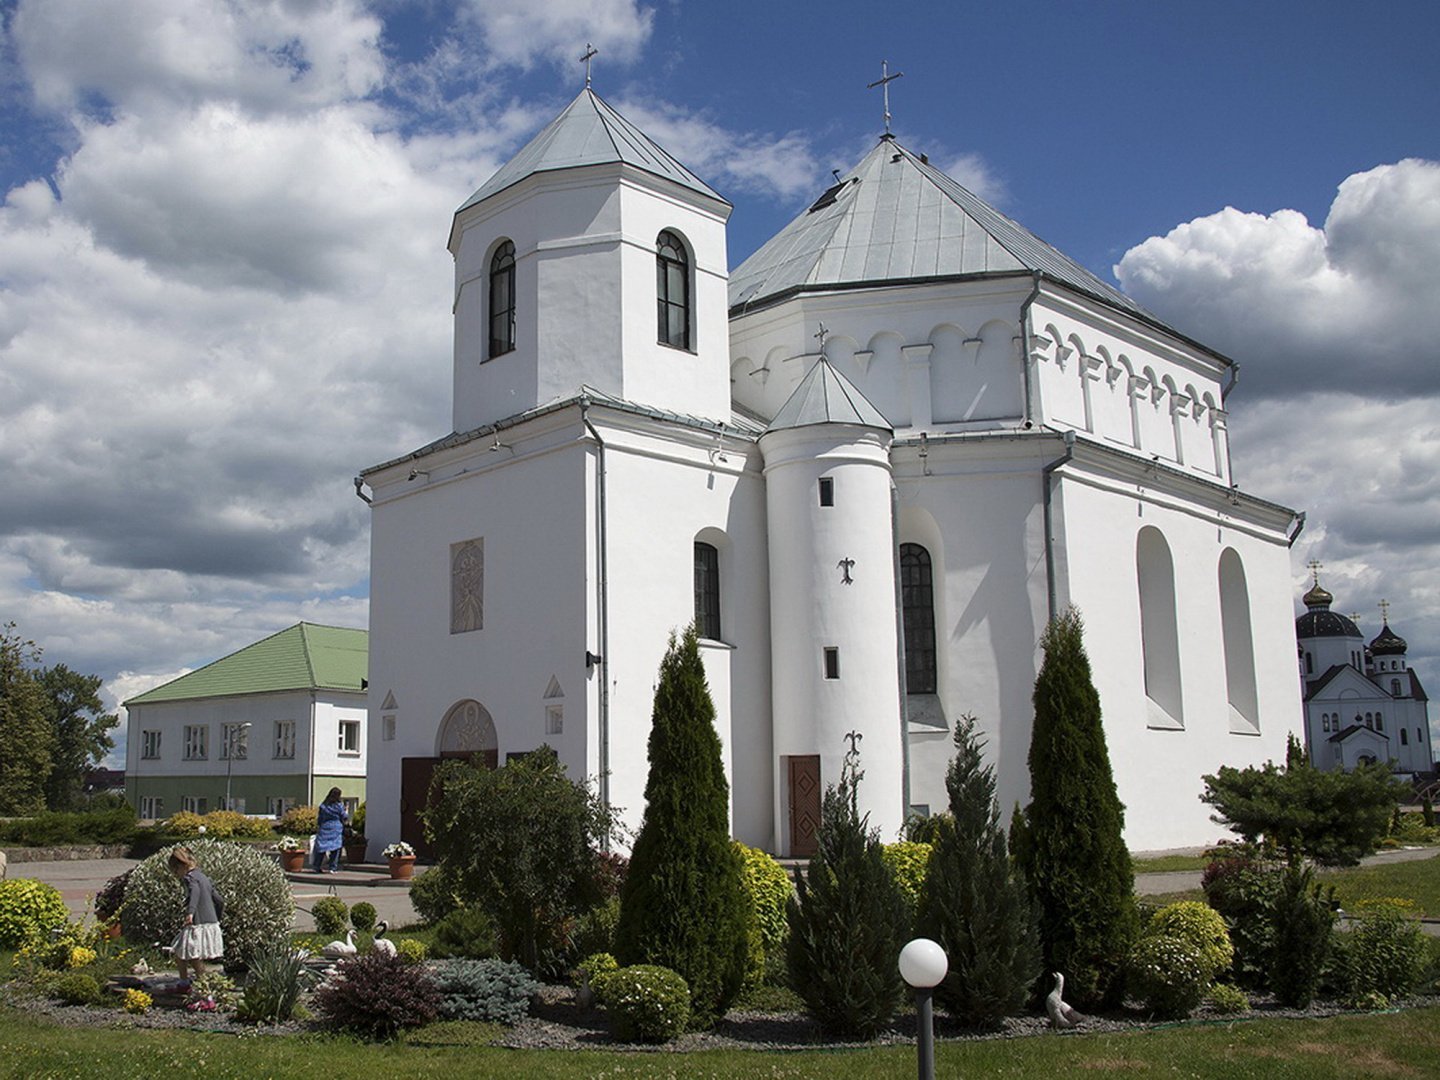 Сморгонский костел Святого Михаила Архангела